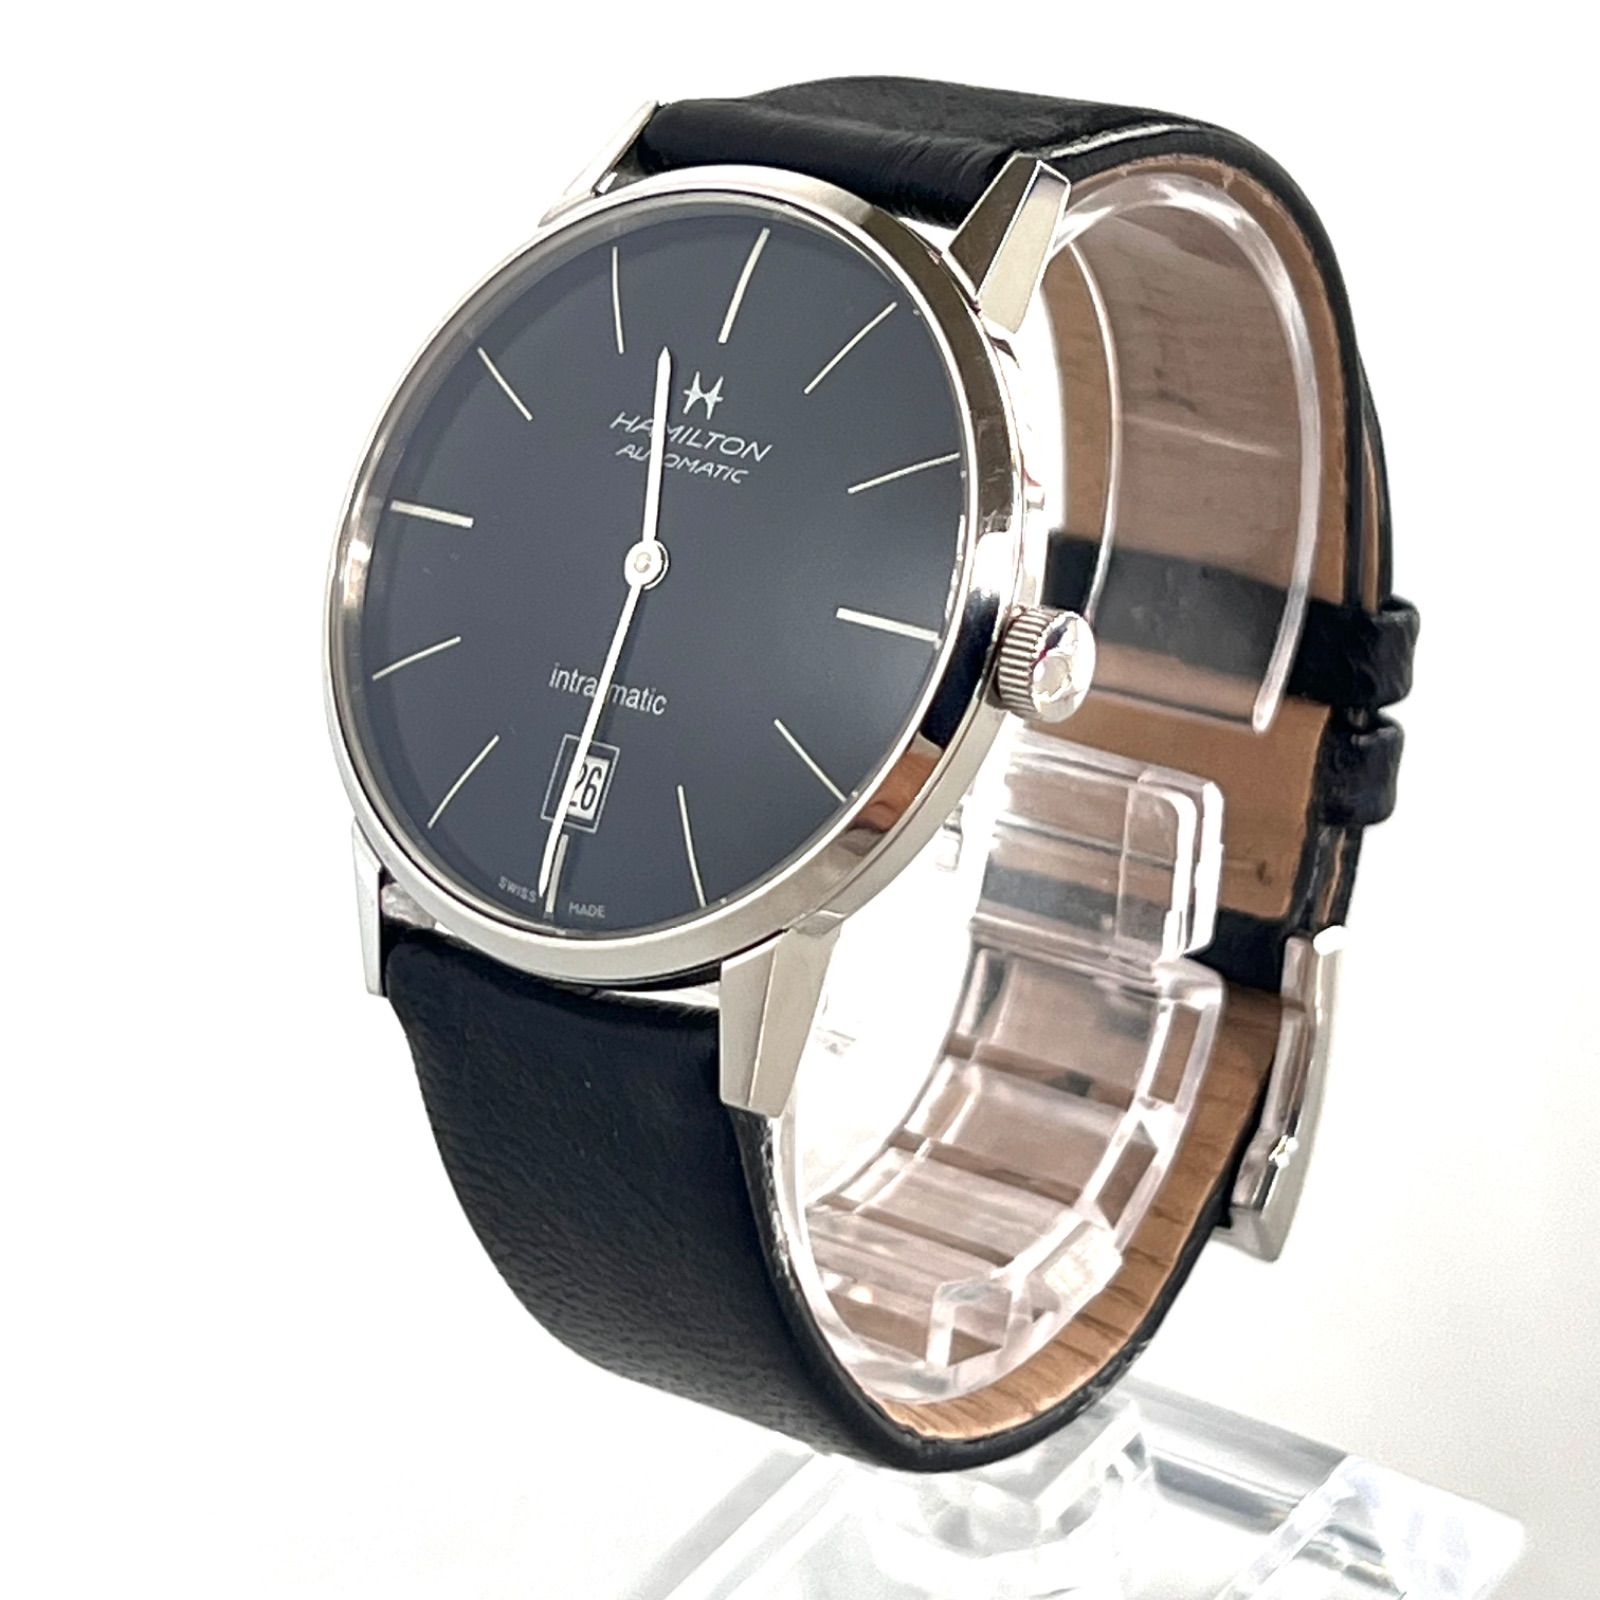 腕時計【Hamilton】腕時計 H387551 イントラマティック